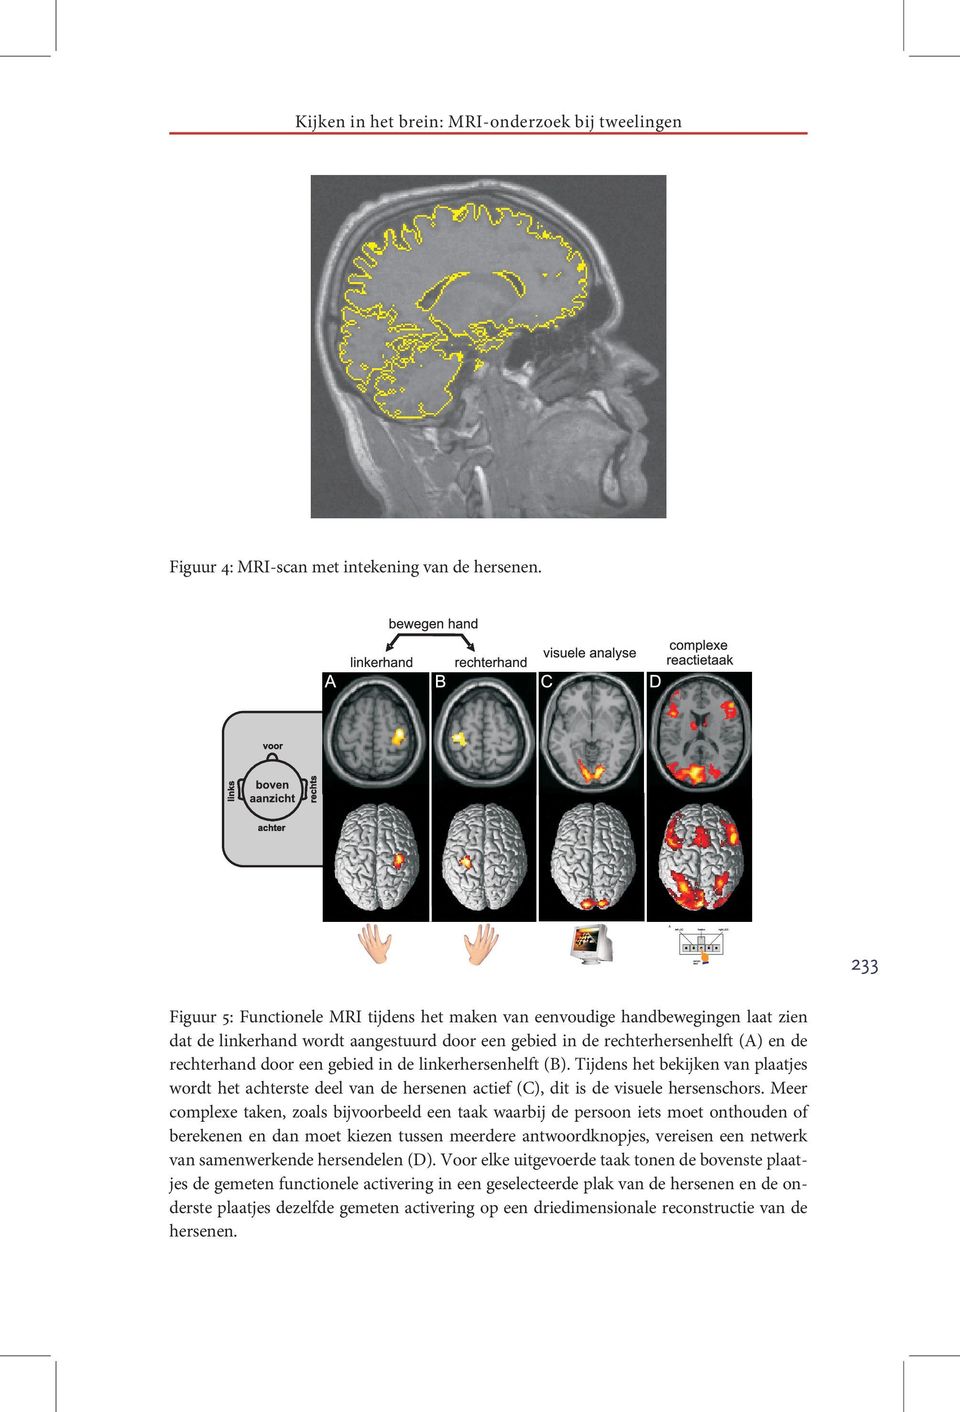 gebied in de linkerhersenhelft (B). Tijdens het bekijken van plaatjes wordt het achterste deel van de hersenen actief (C), dit is de visuele hersenschors.